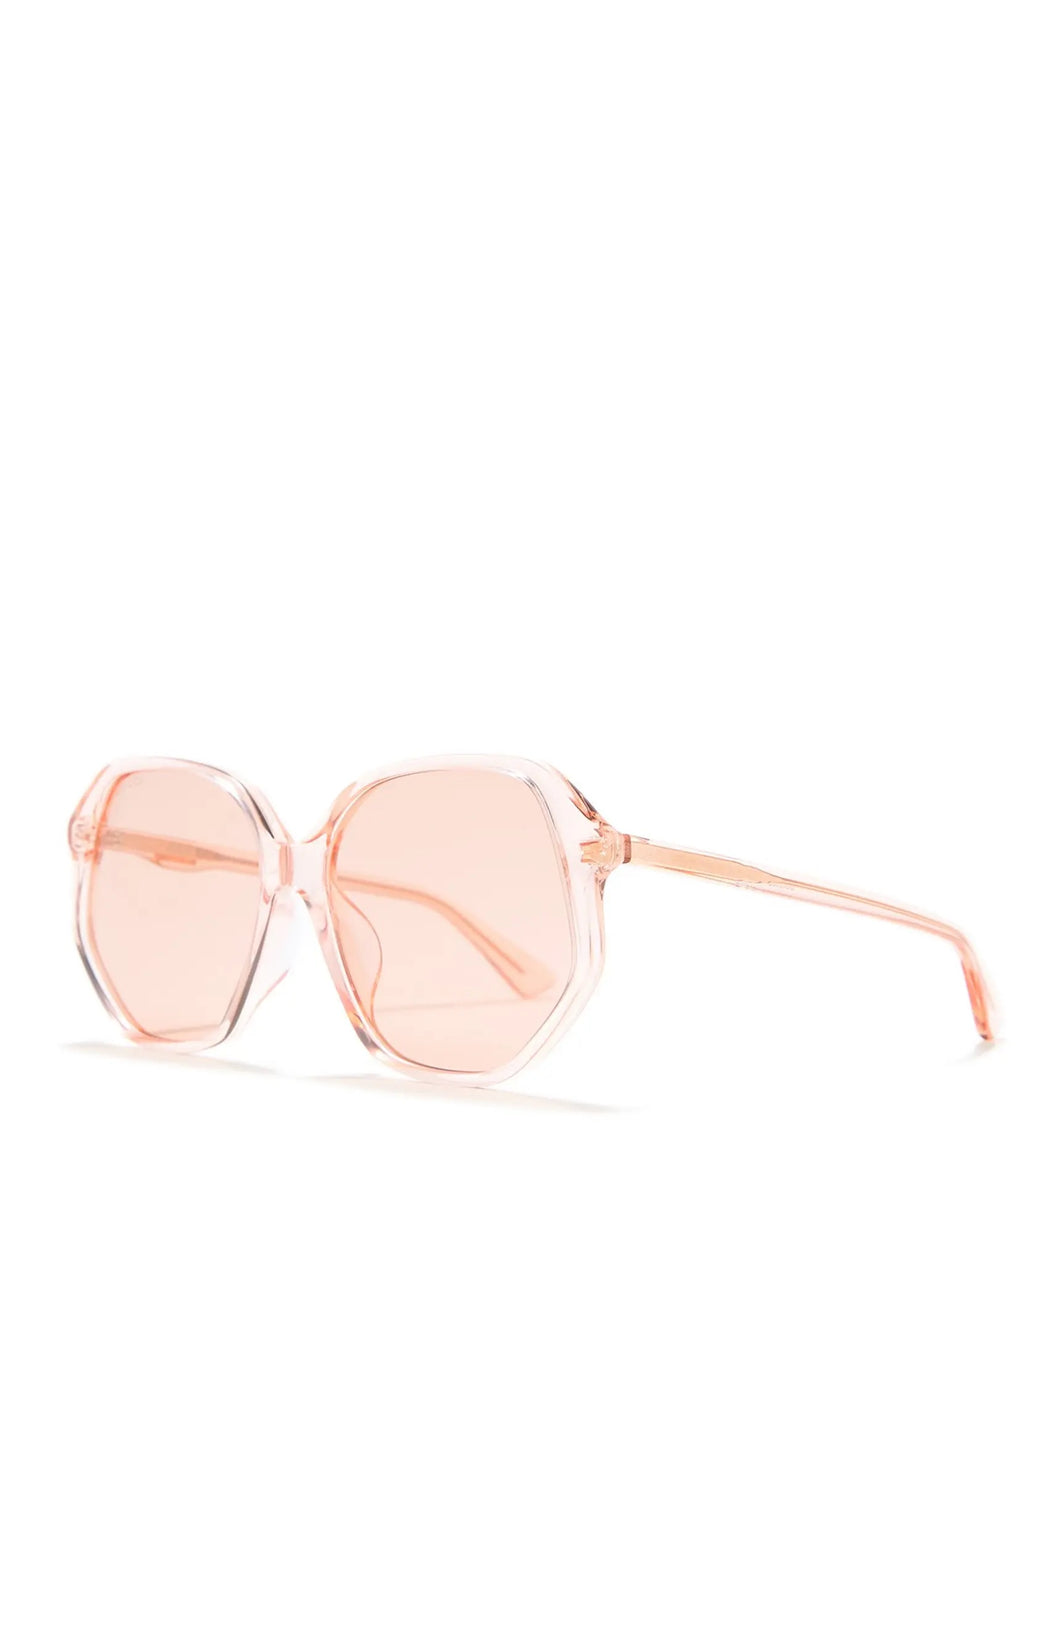 Gucci 59mm Round Sunglasses